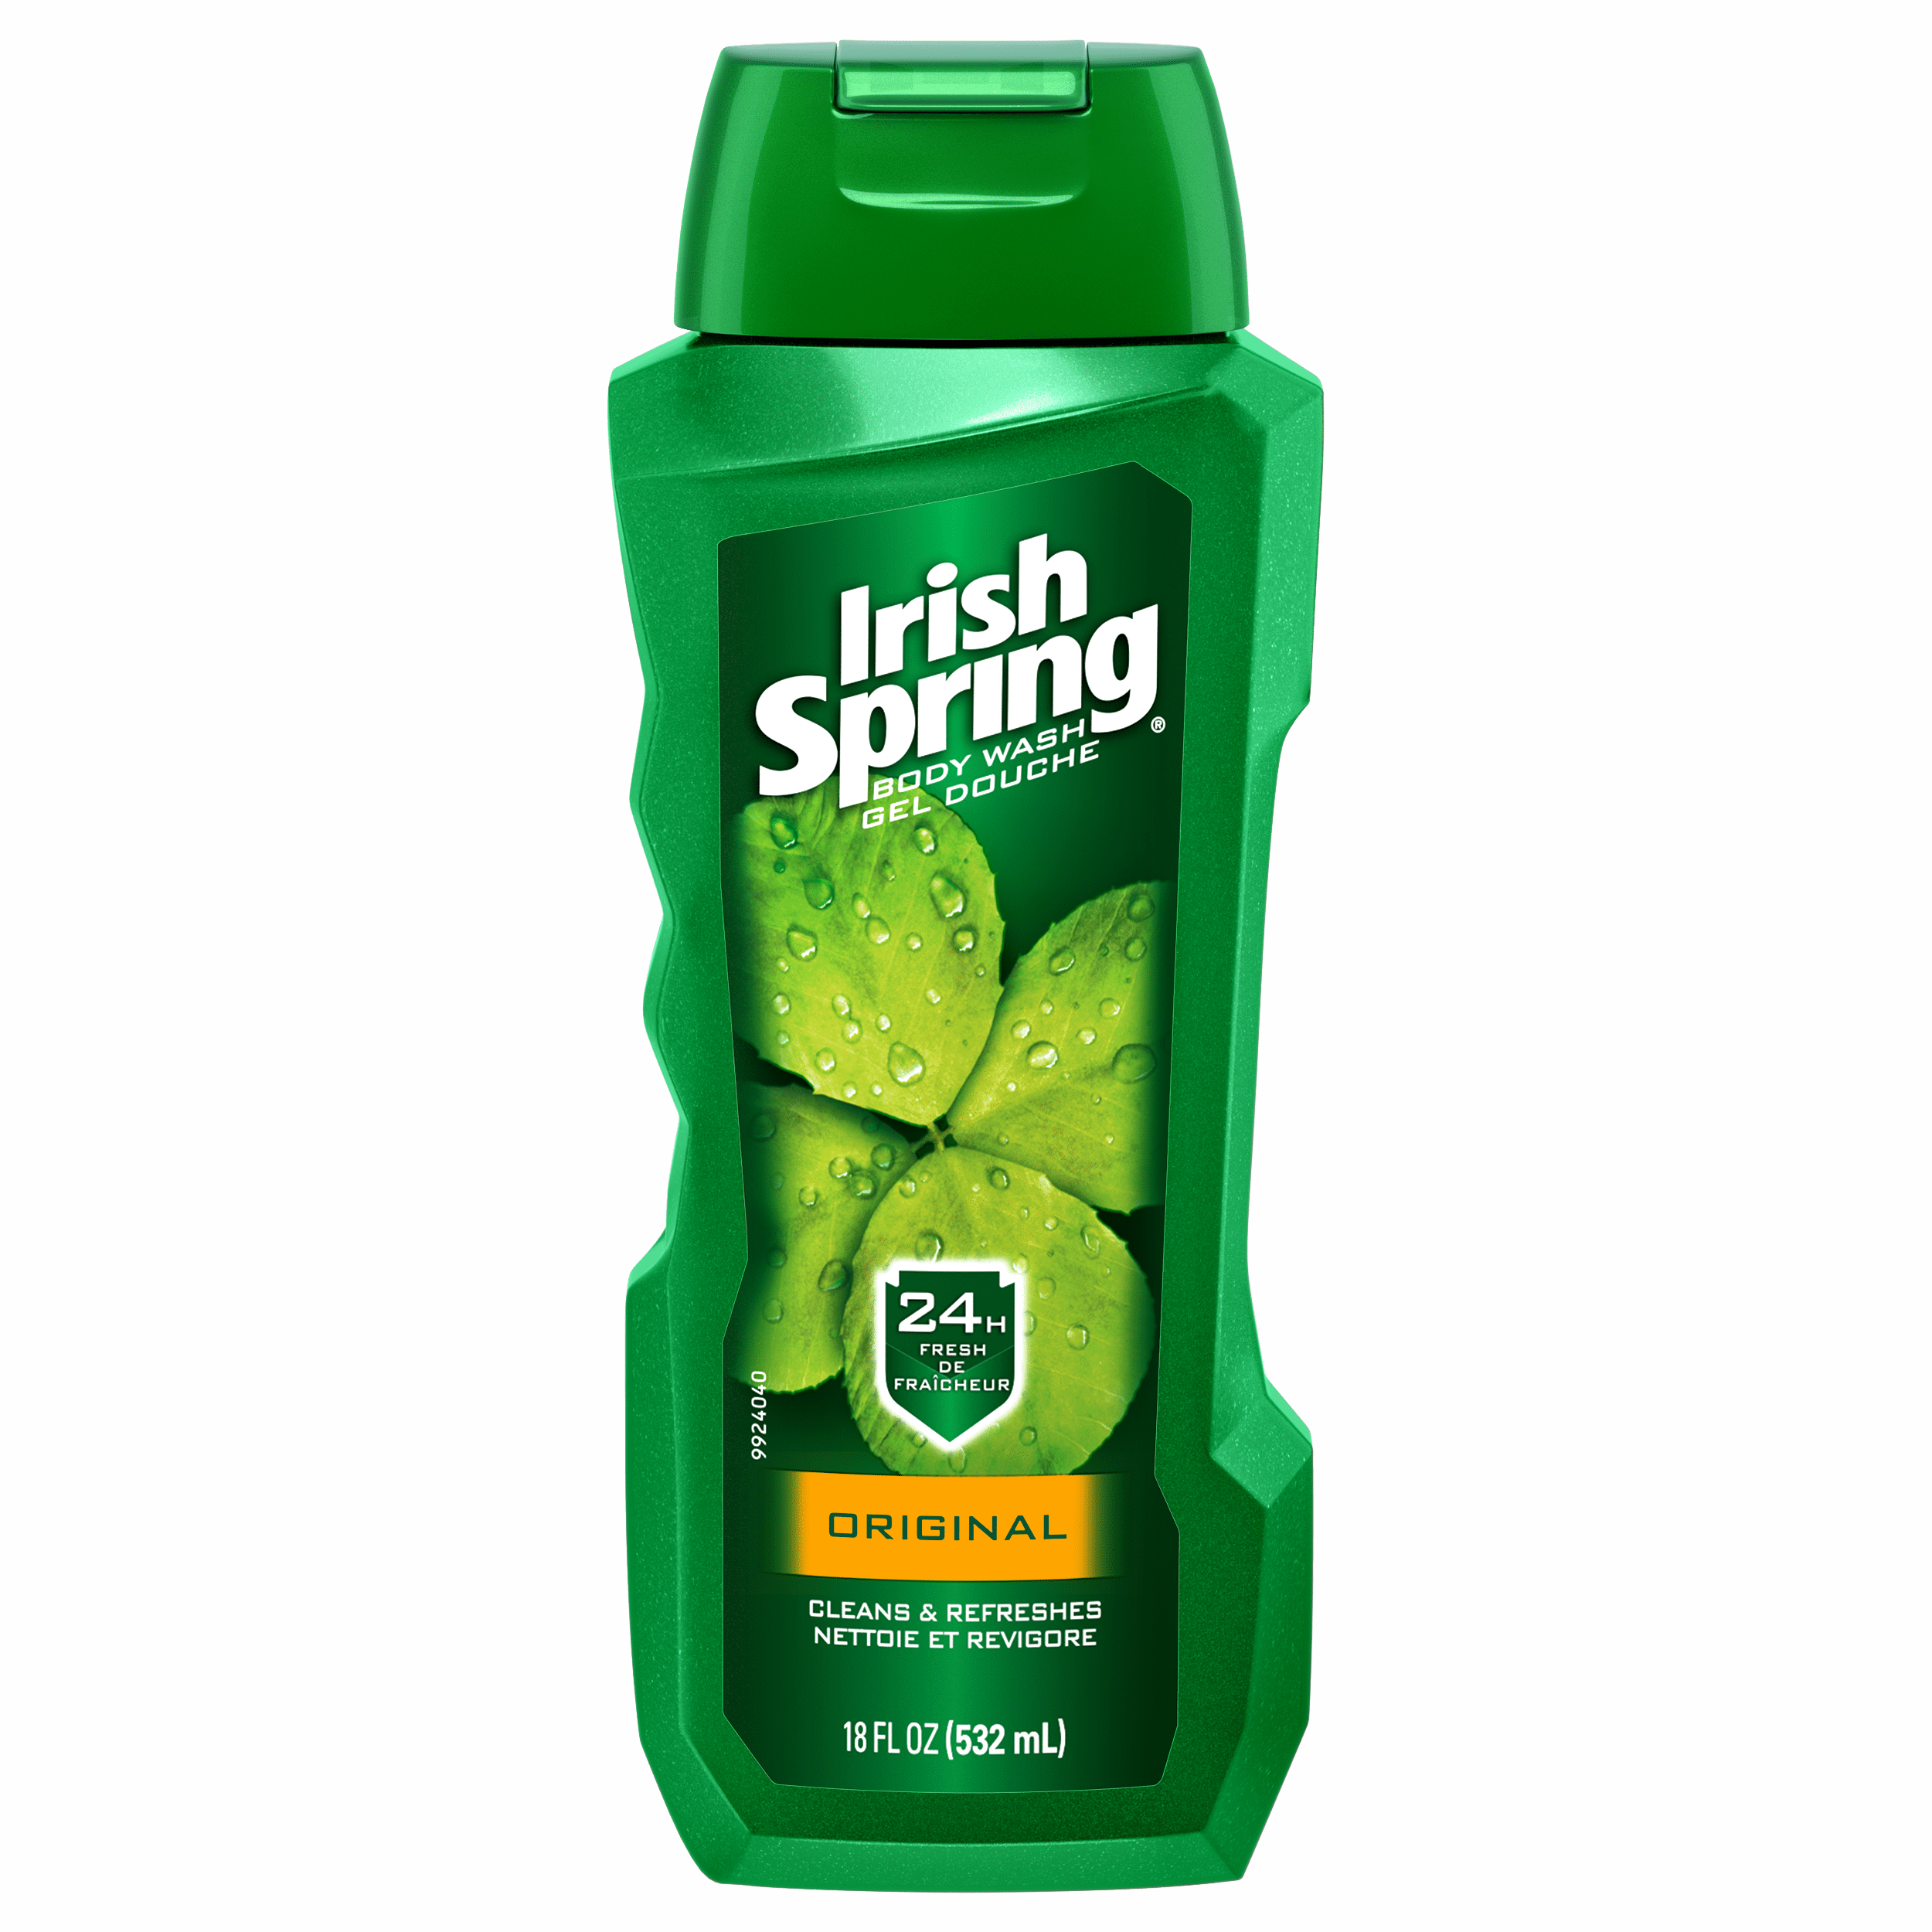 irish-spring-body-wash-for-men-original-18-fl-oz-walmart